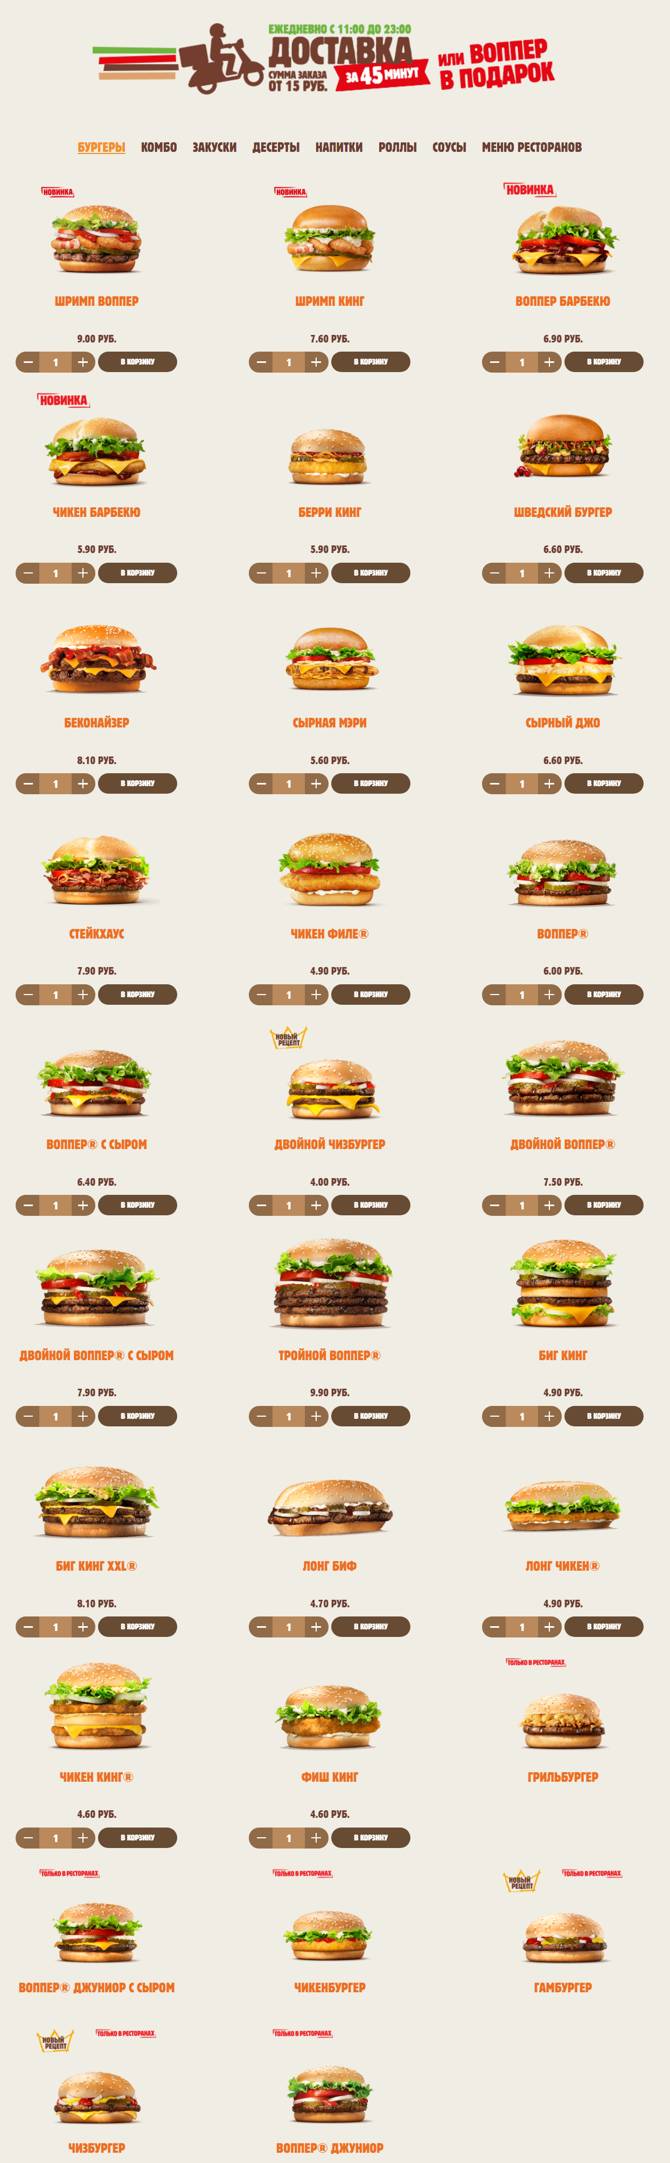 burger 0705 2